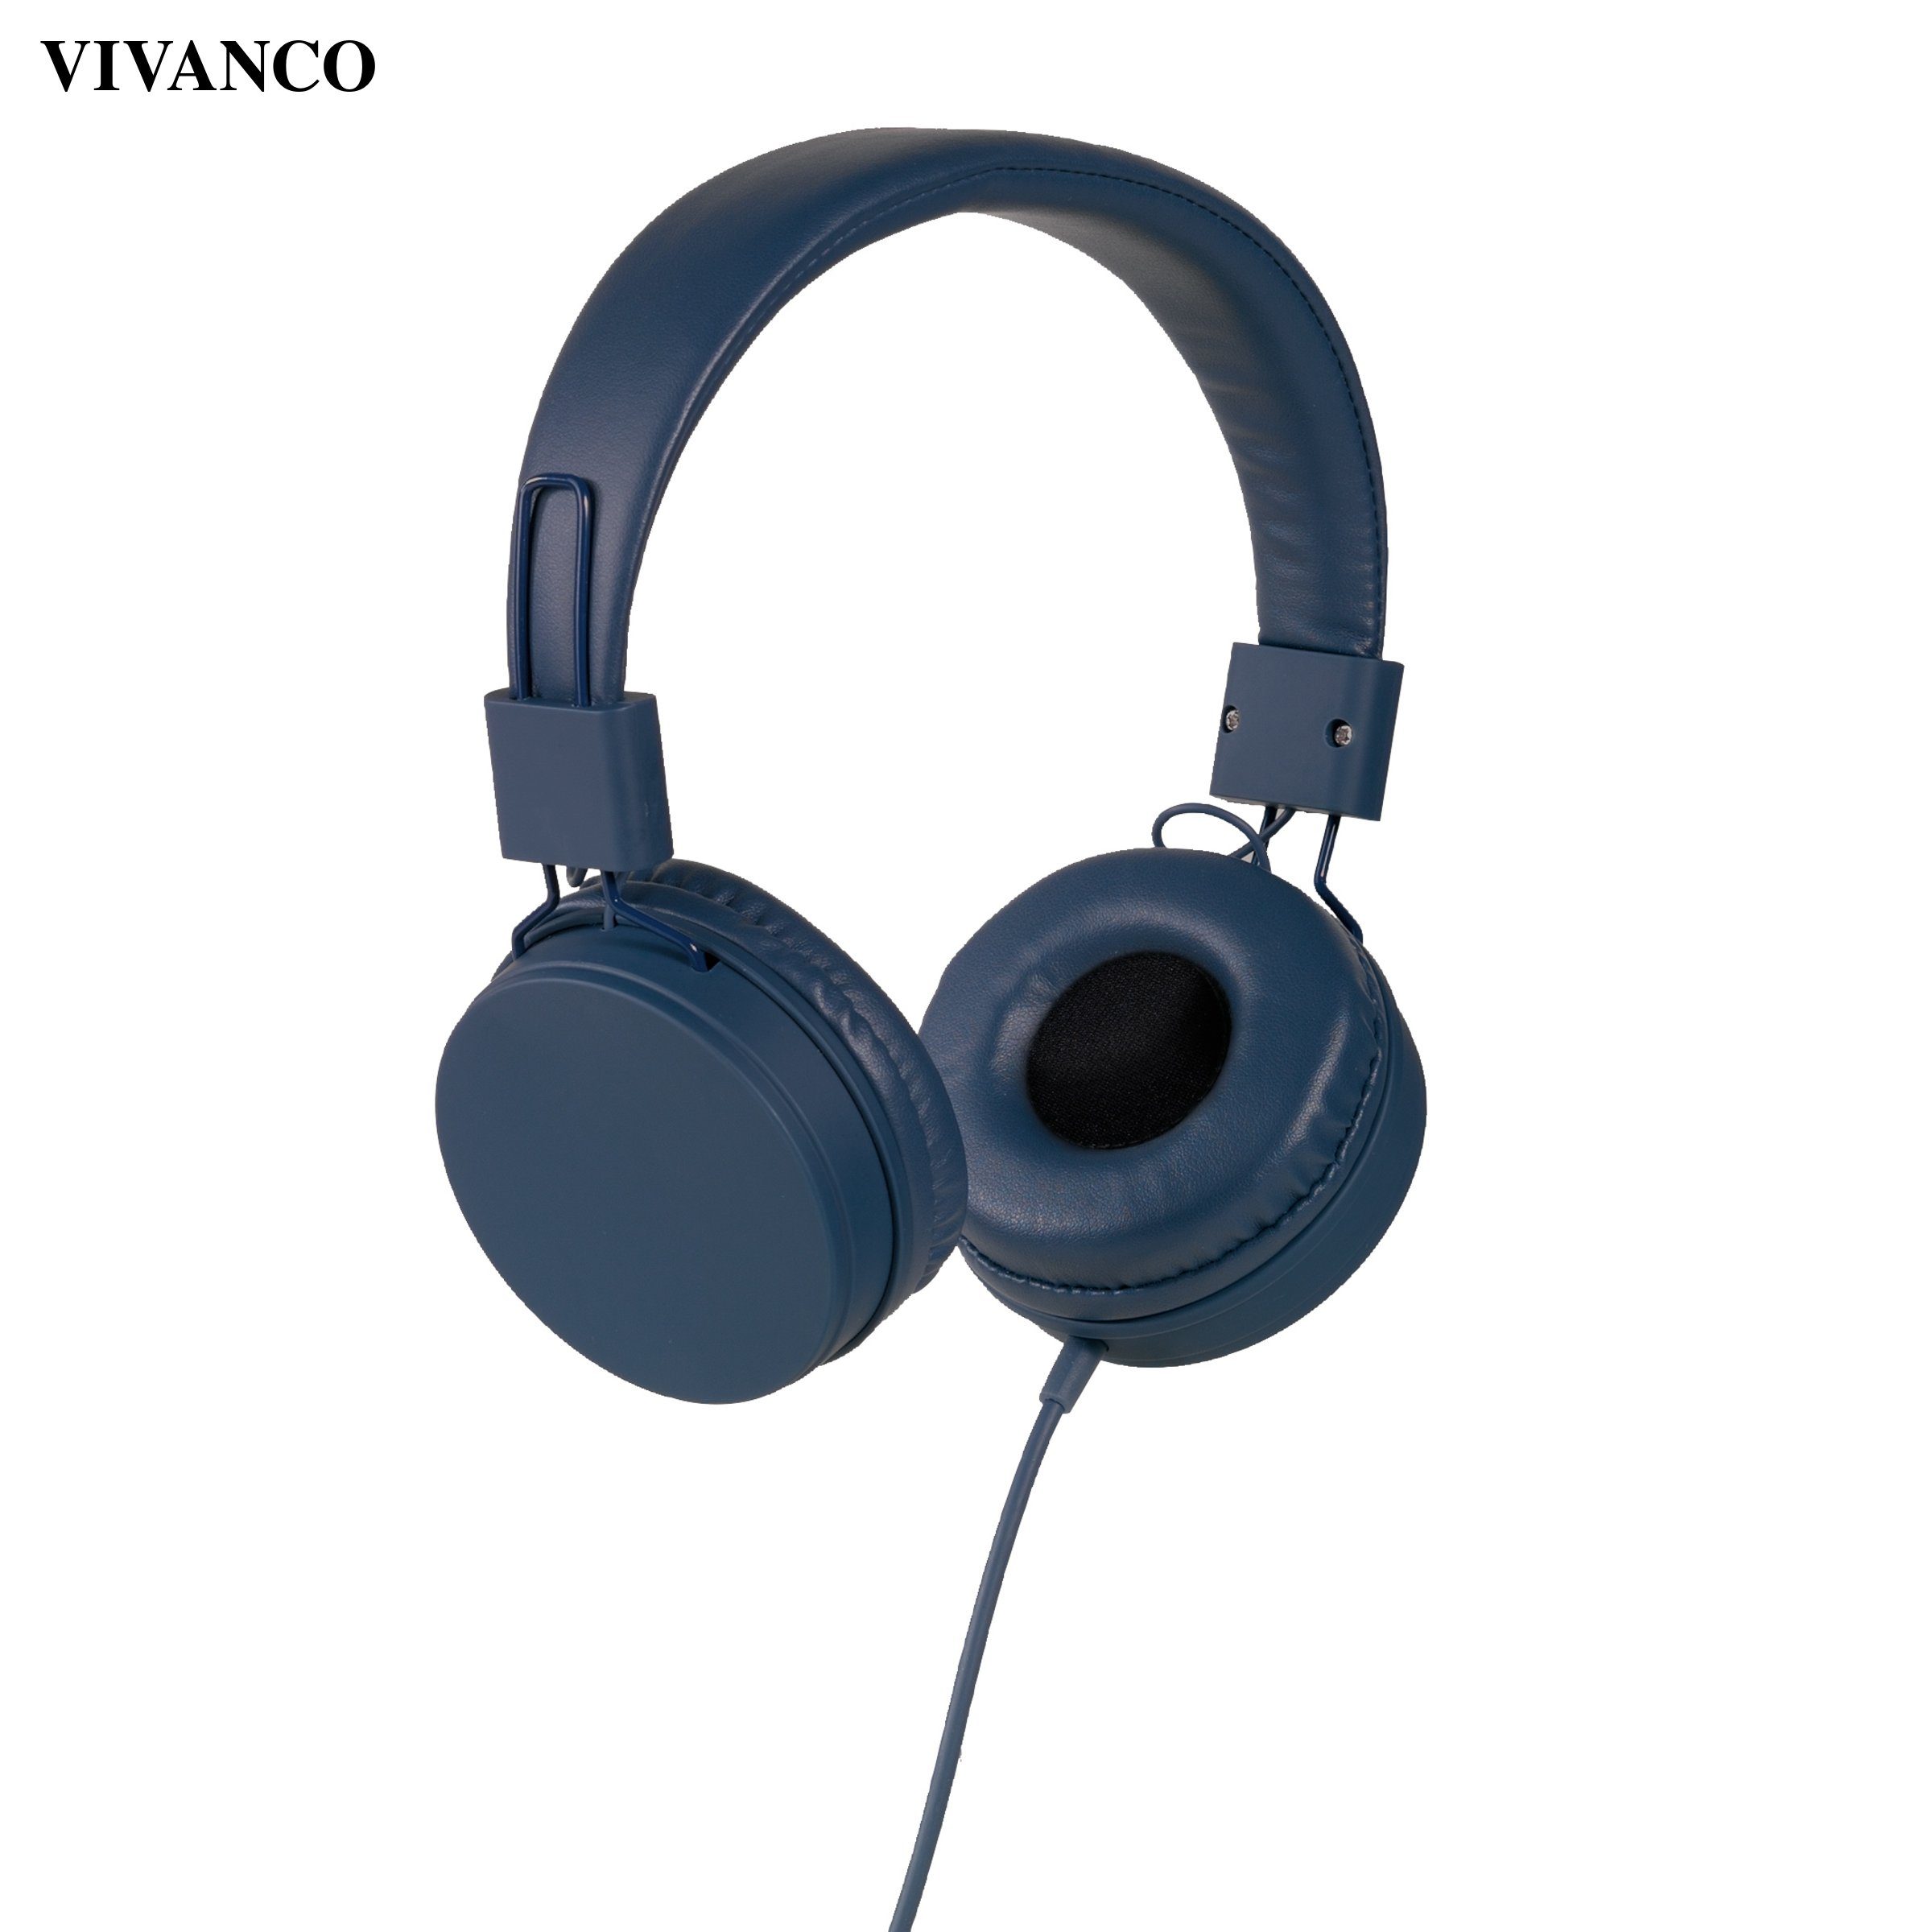 (Anruffunktion), Kopfhörer, Vivanco Vivanco Kopfhörer Ohraufliegende Kopfhörer Ohraufliegende